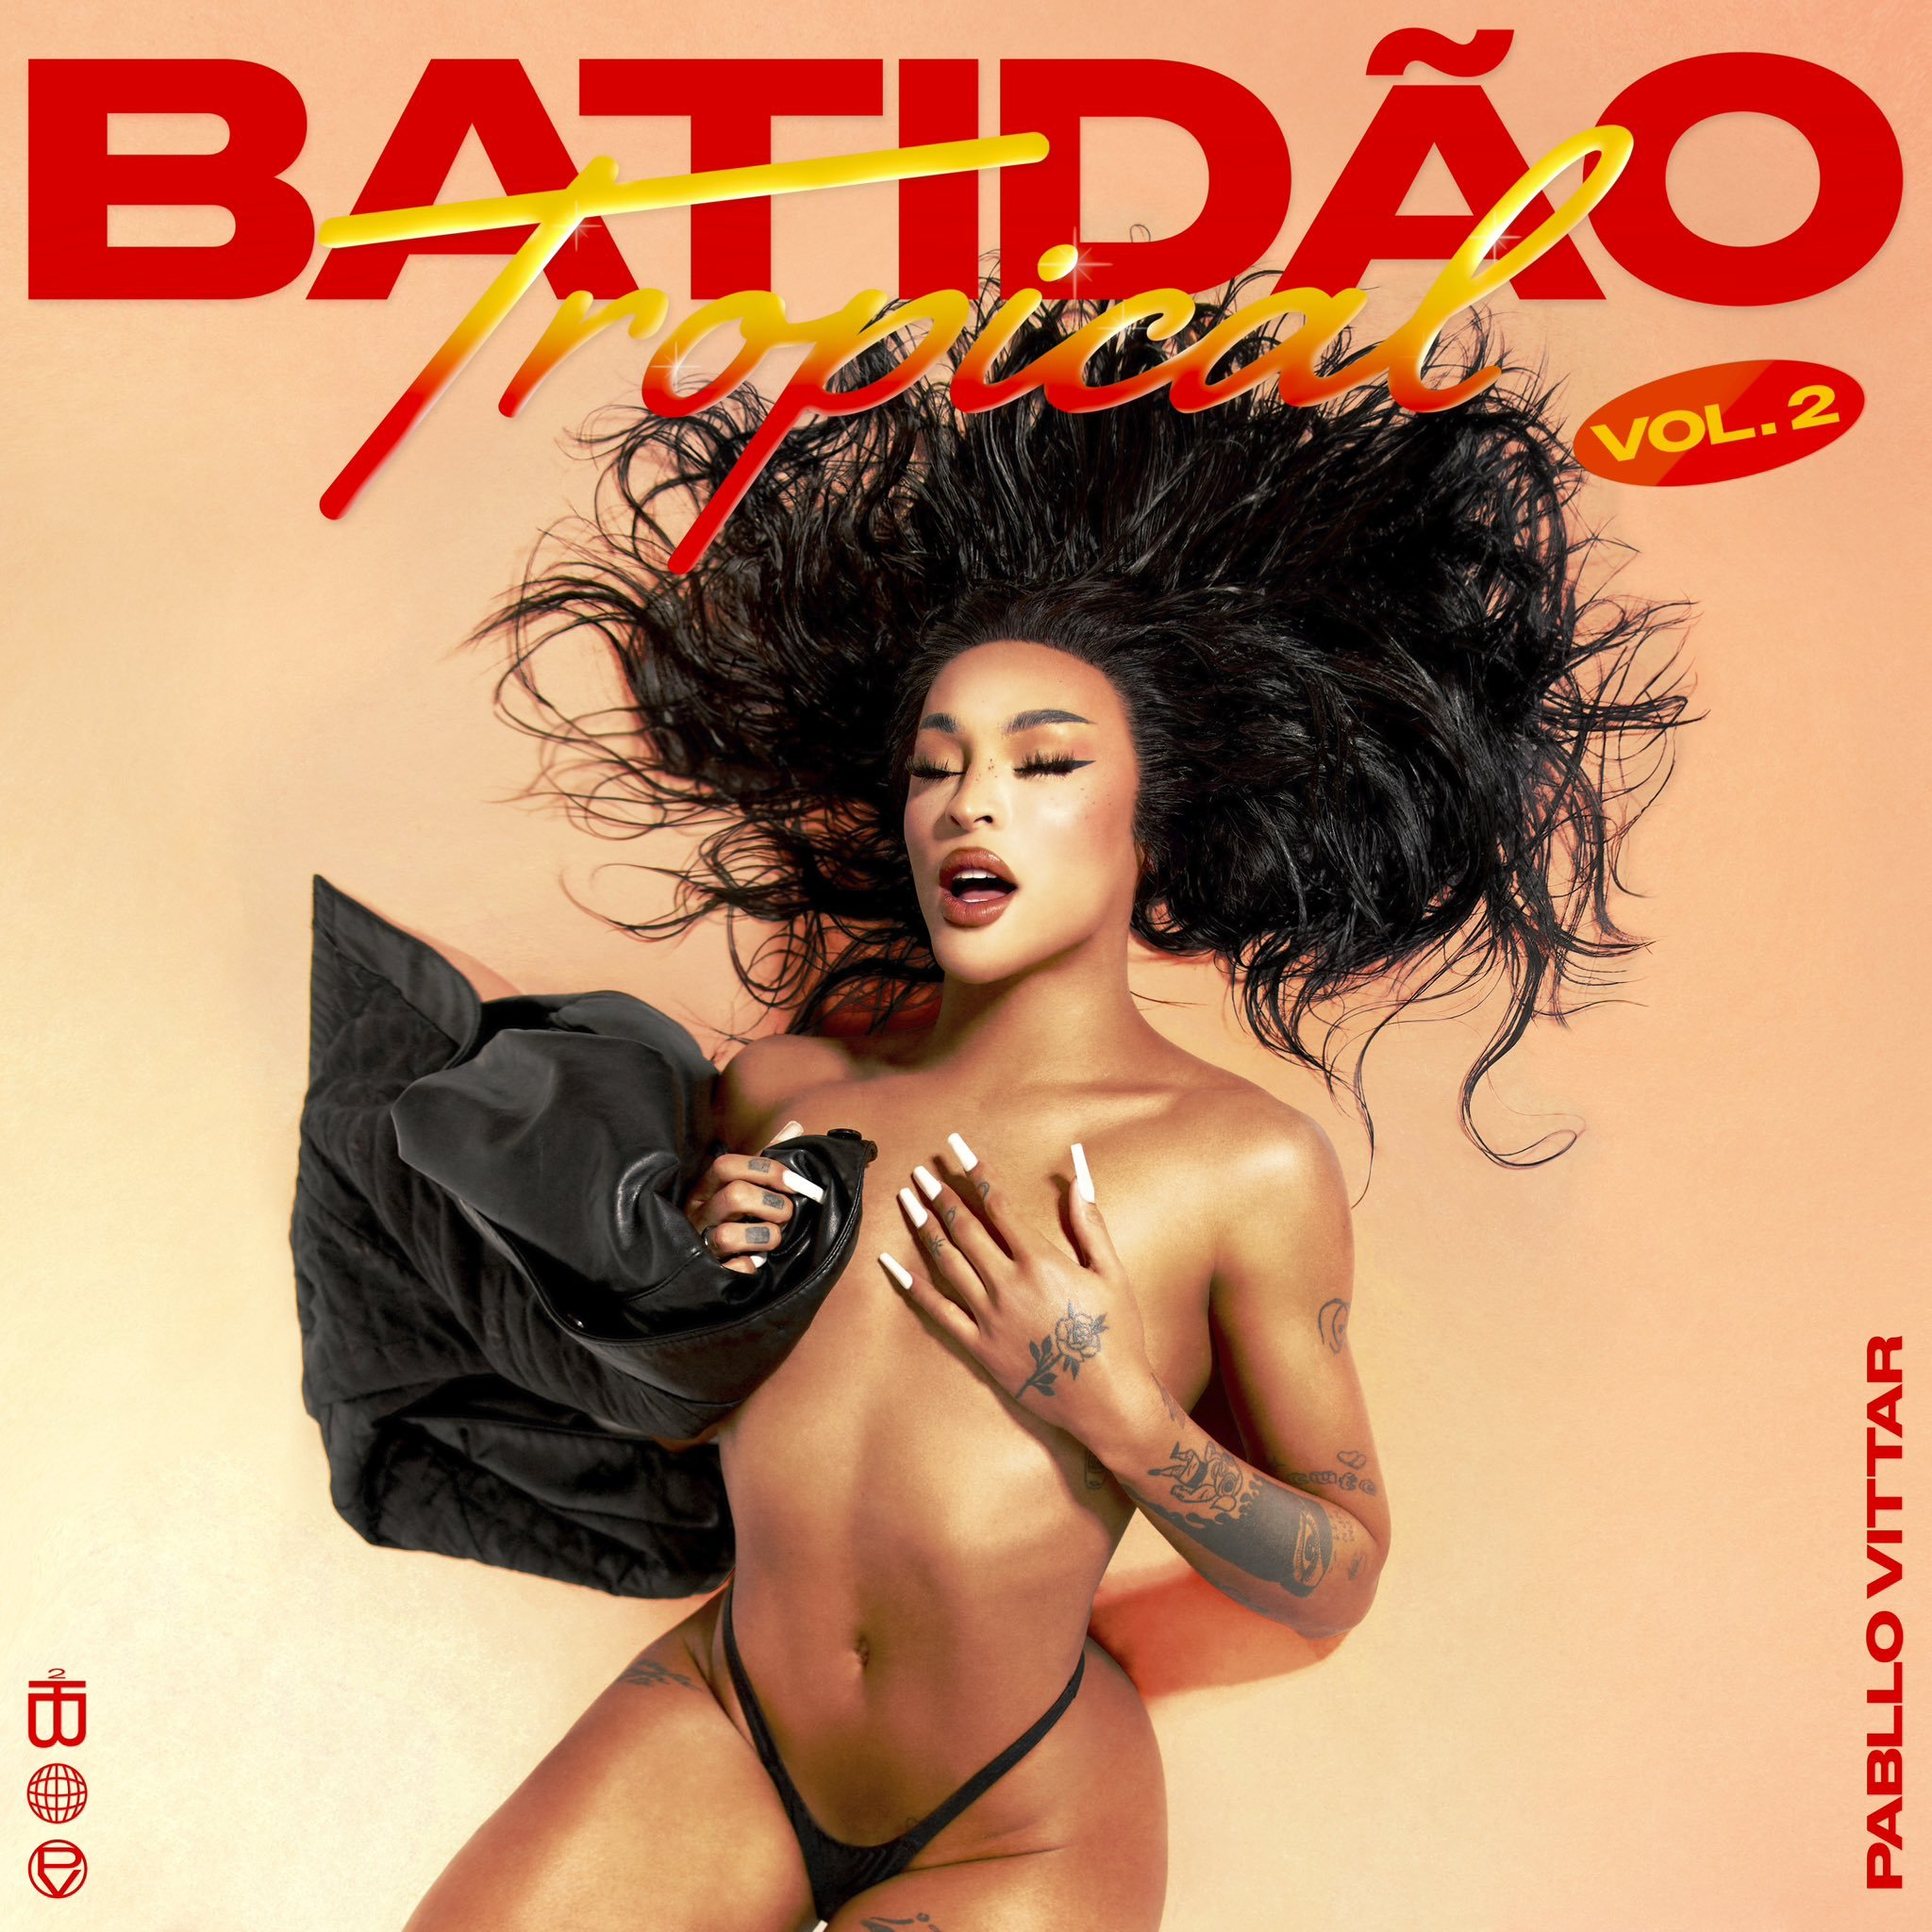 Pabllo Vittar Batidão Tropical, Vol. 2 cover artwork